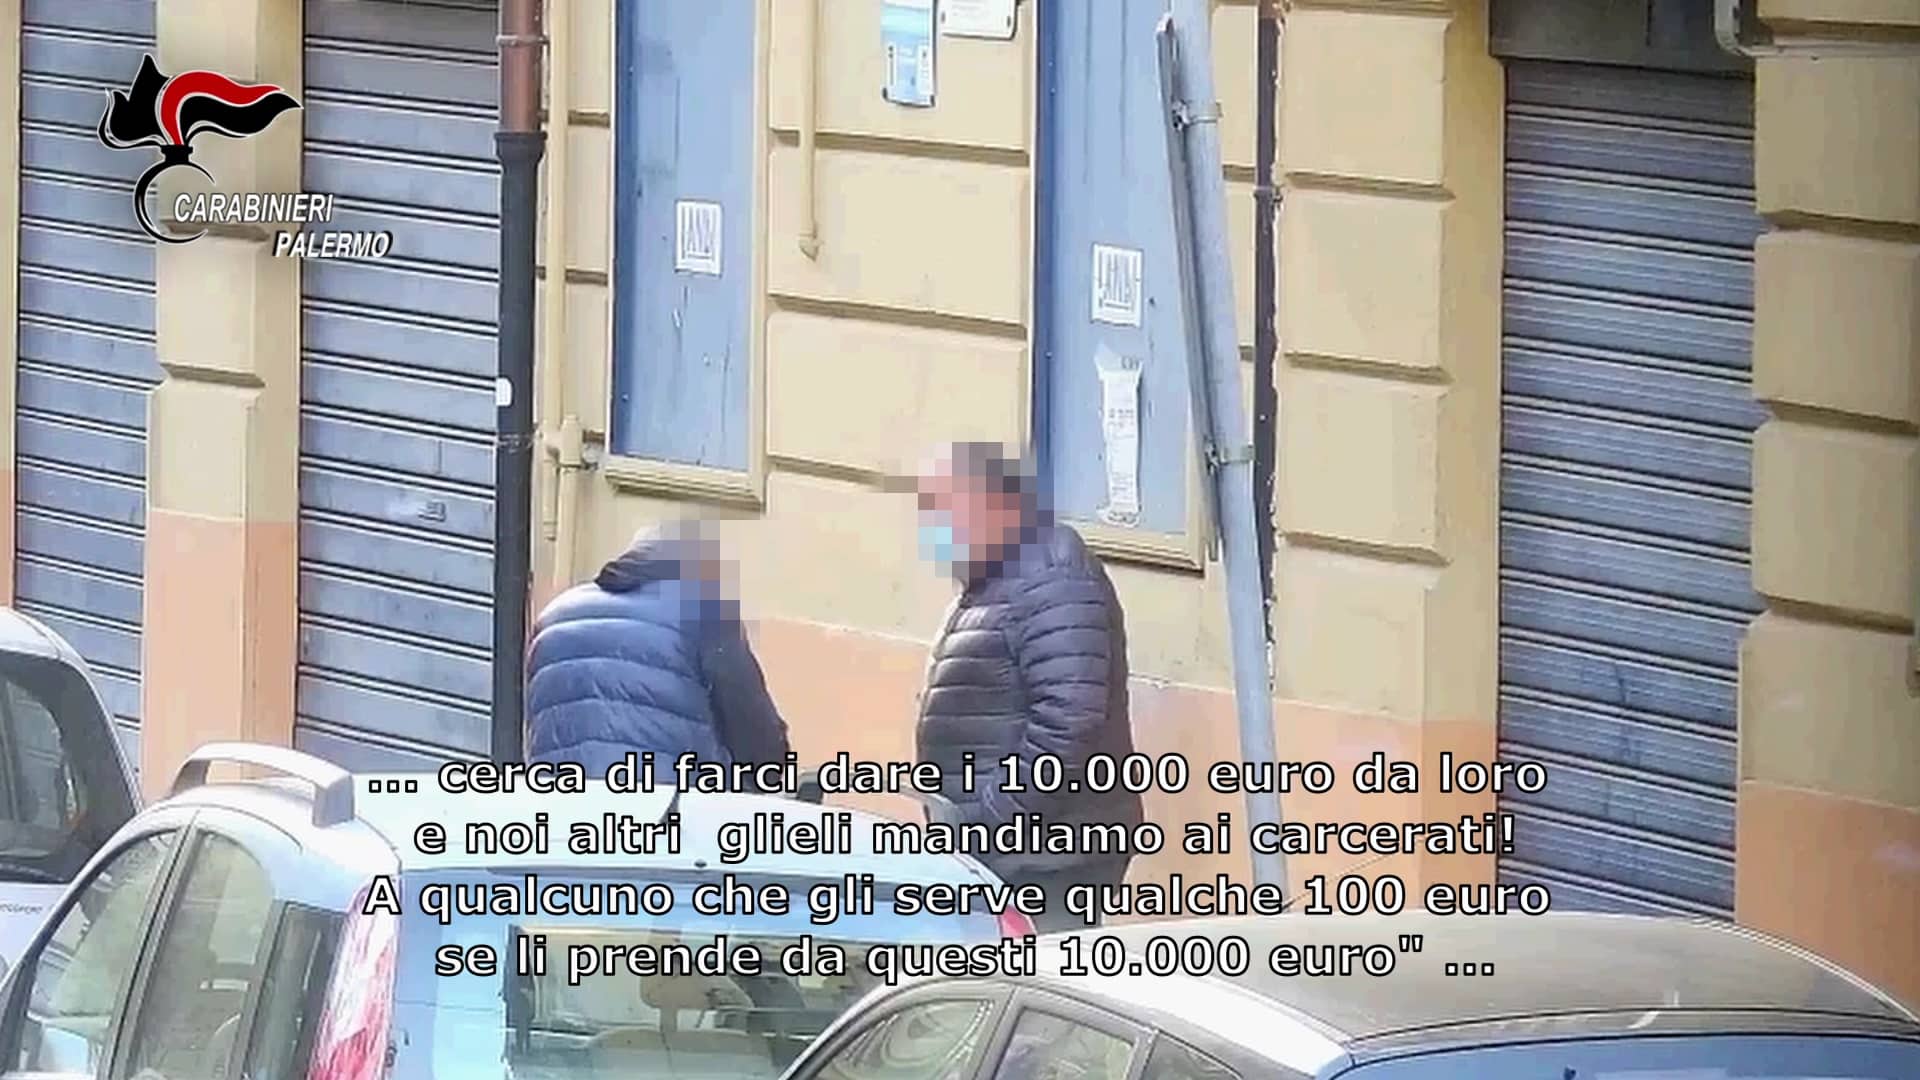 Operazioni Stirpe e Tentacoli, 16 arresti in Sicilia per mafia ed estorsione: ecco come chiedevano il pizzo in città – NOMI e VIDEO